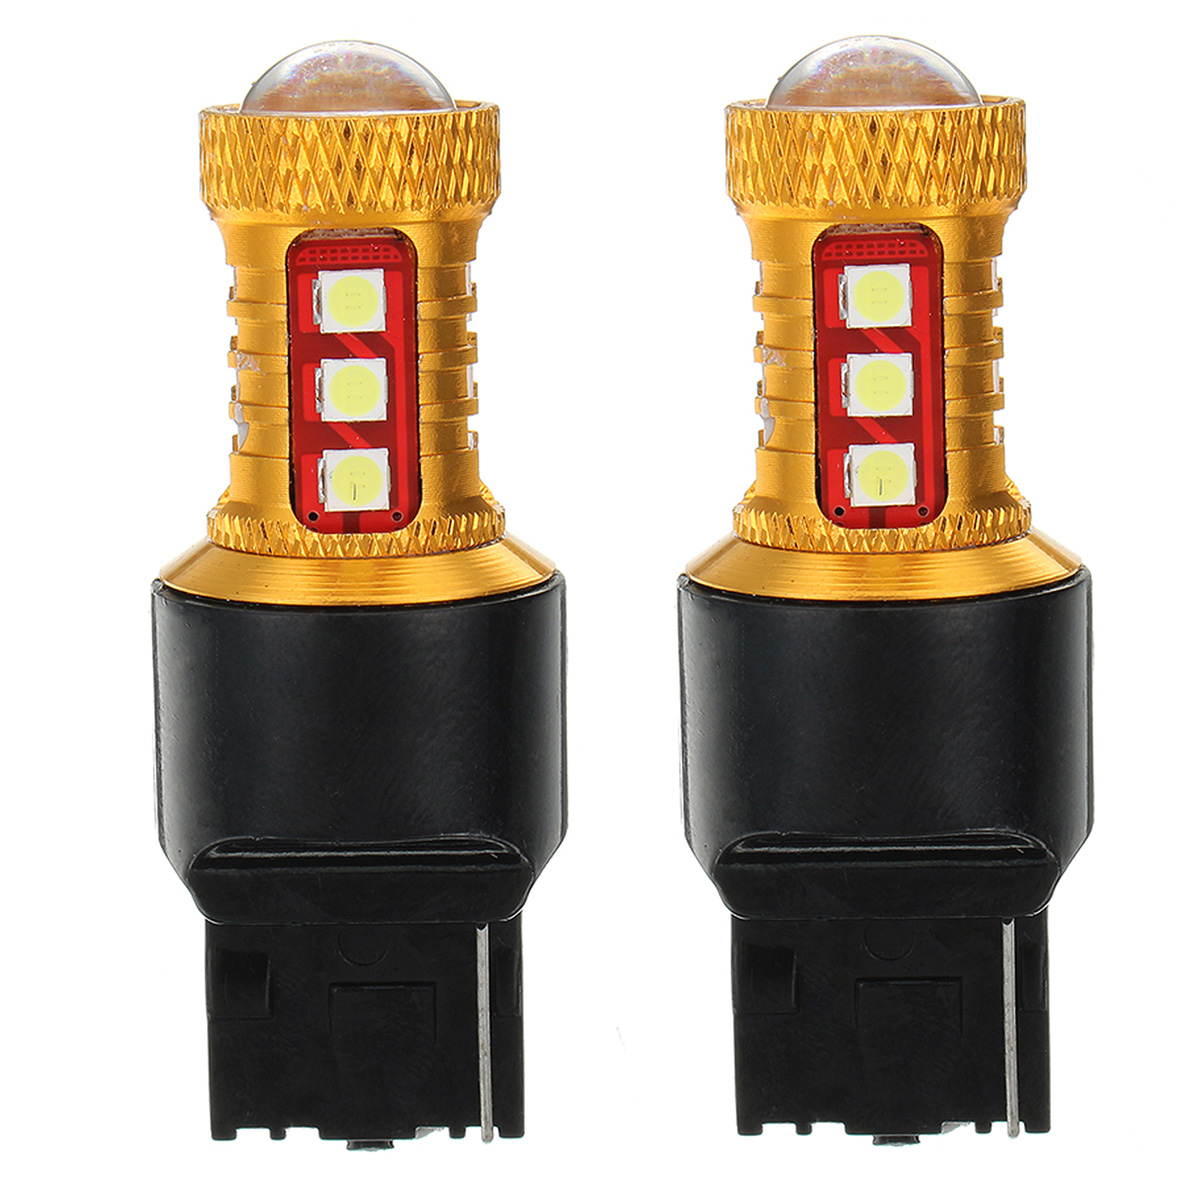 

Пара T20 7443/7440 LED Авто Тормозные огни Обратные лампы резервного питания DC12V-24V 15W 600LM